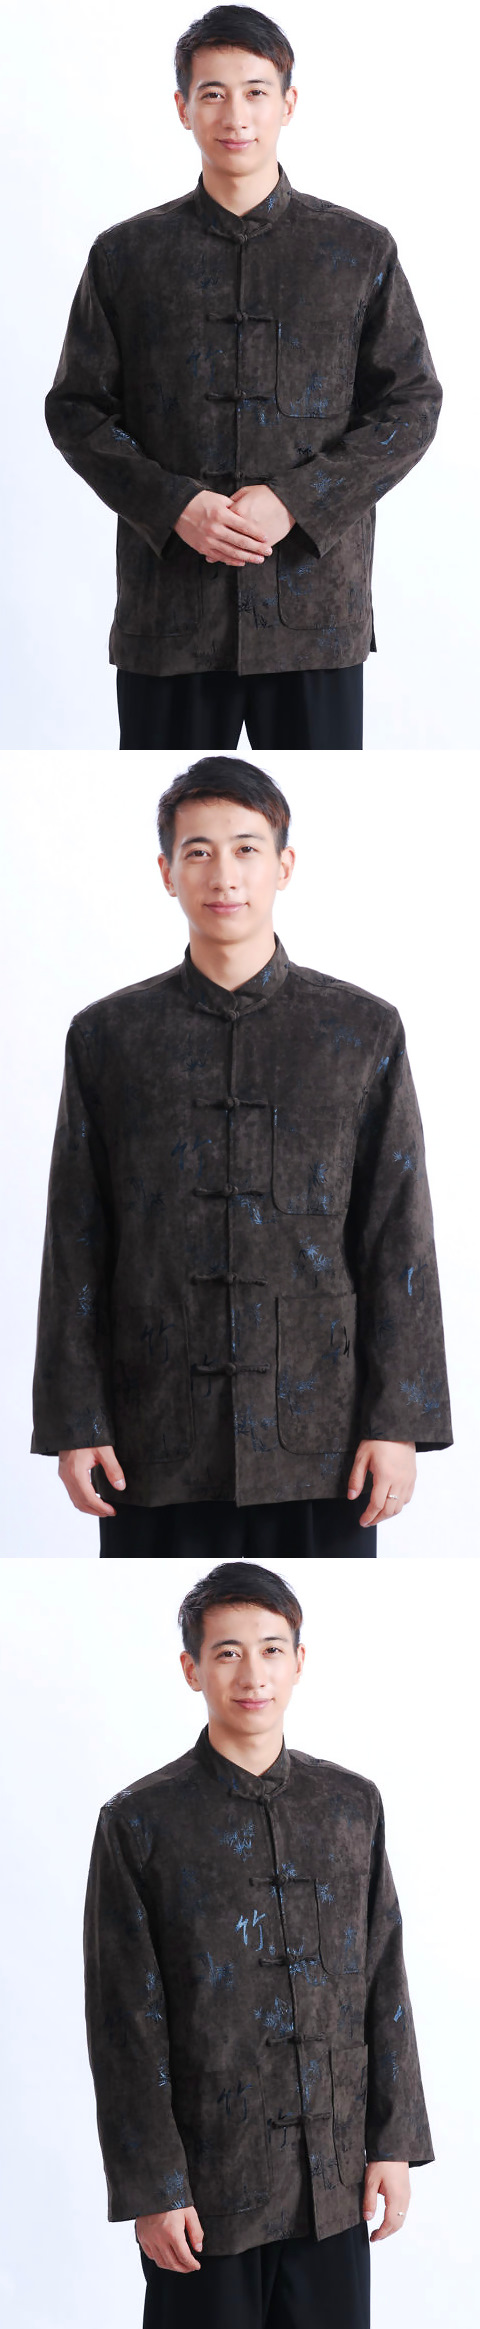 Mandarin Bamboo Patterns Velvet Jacket (RM)